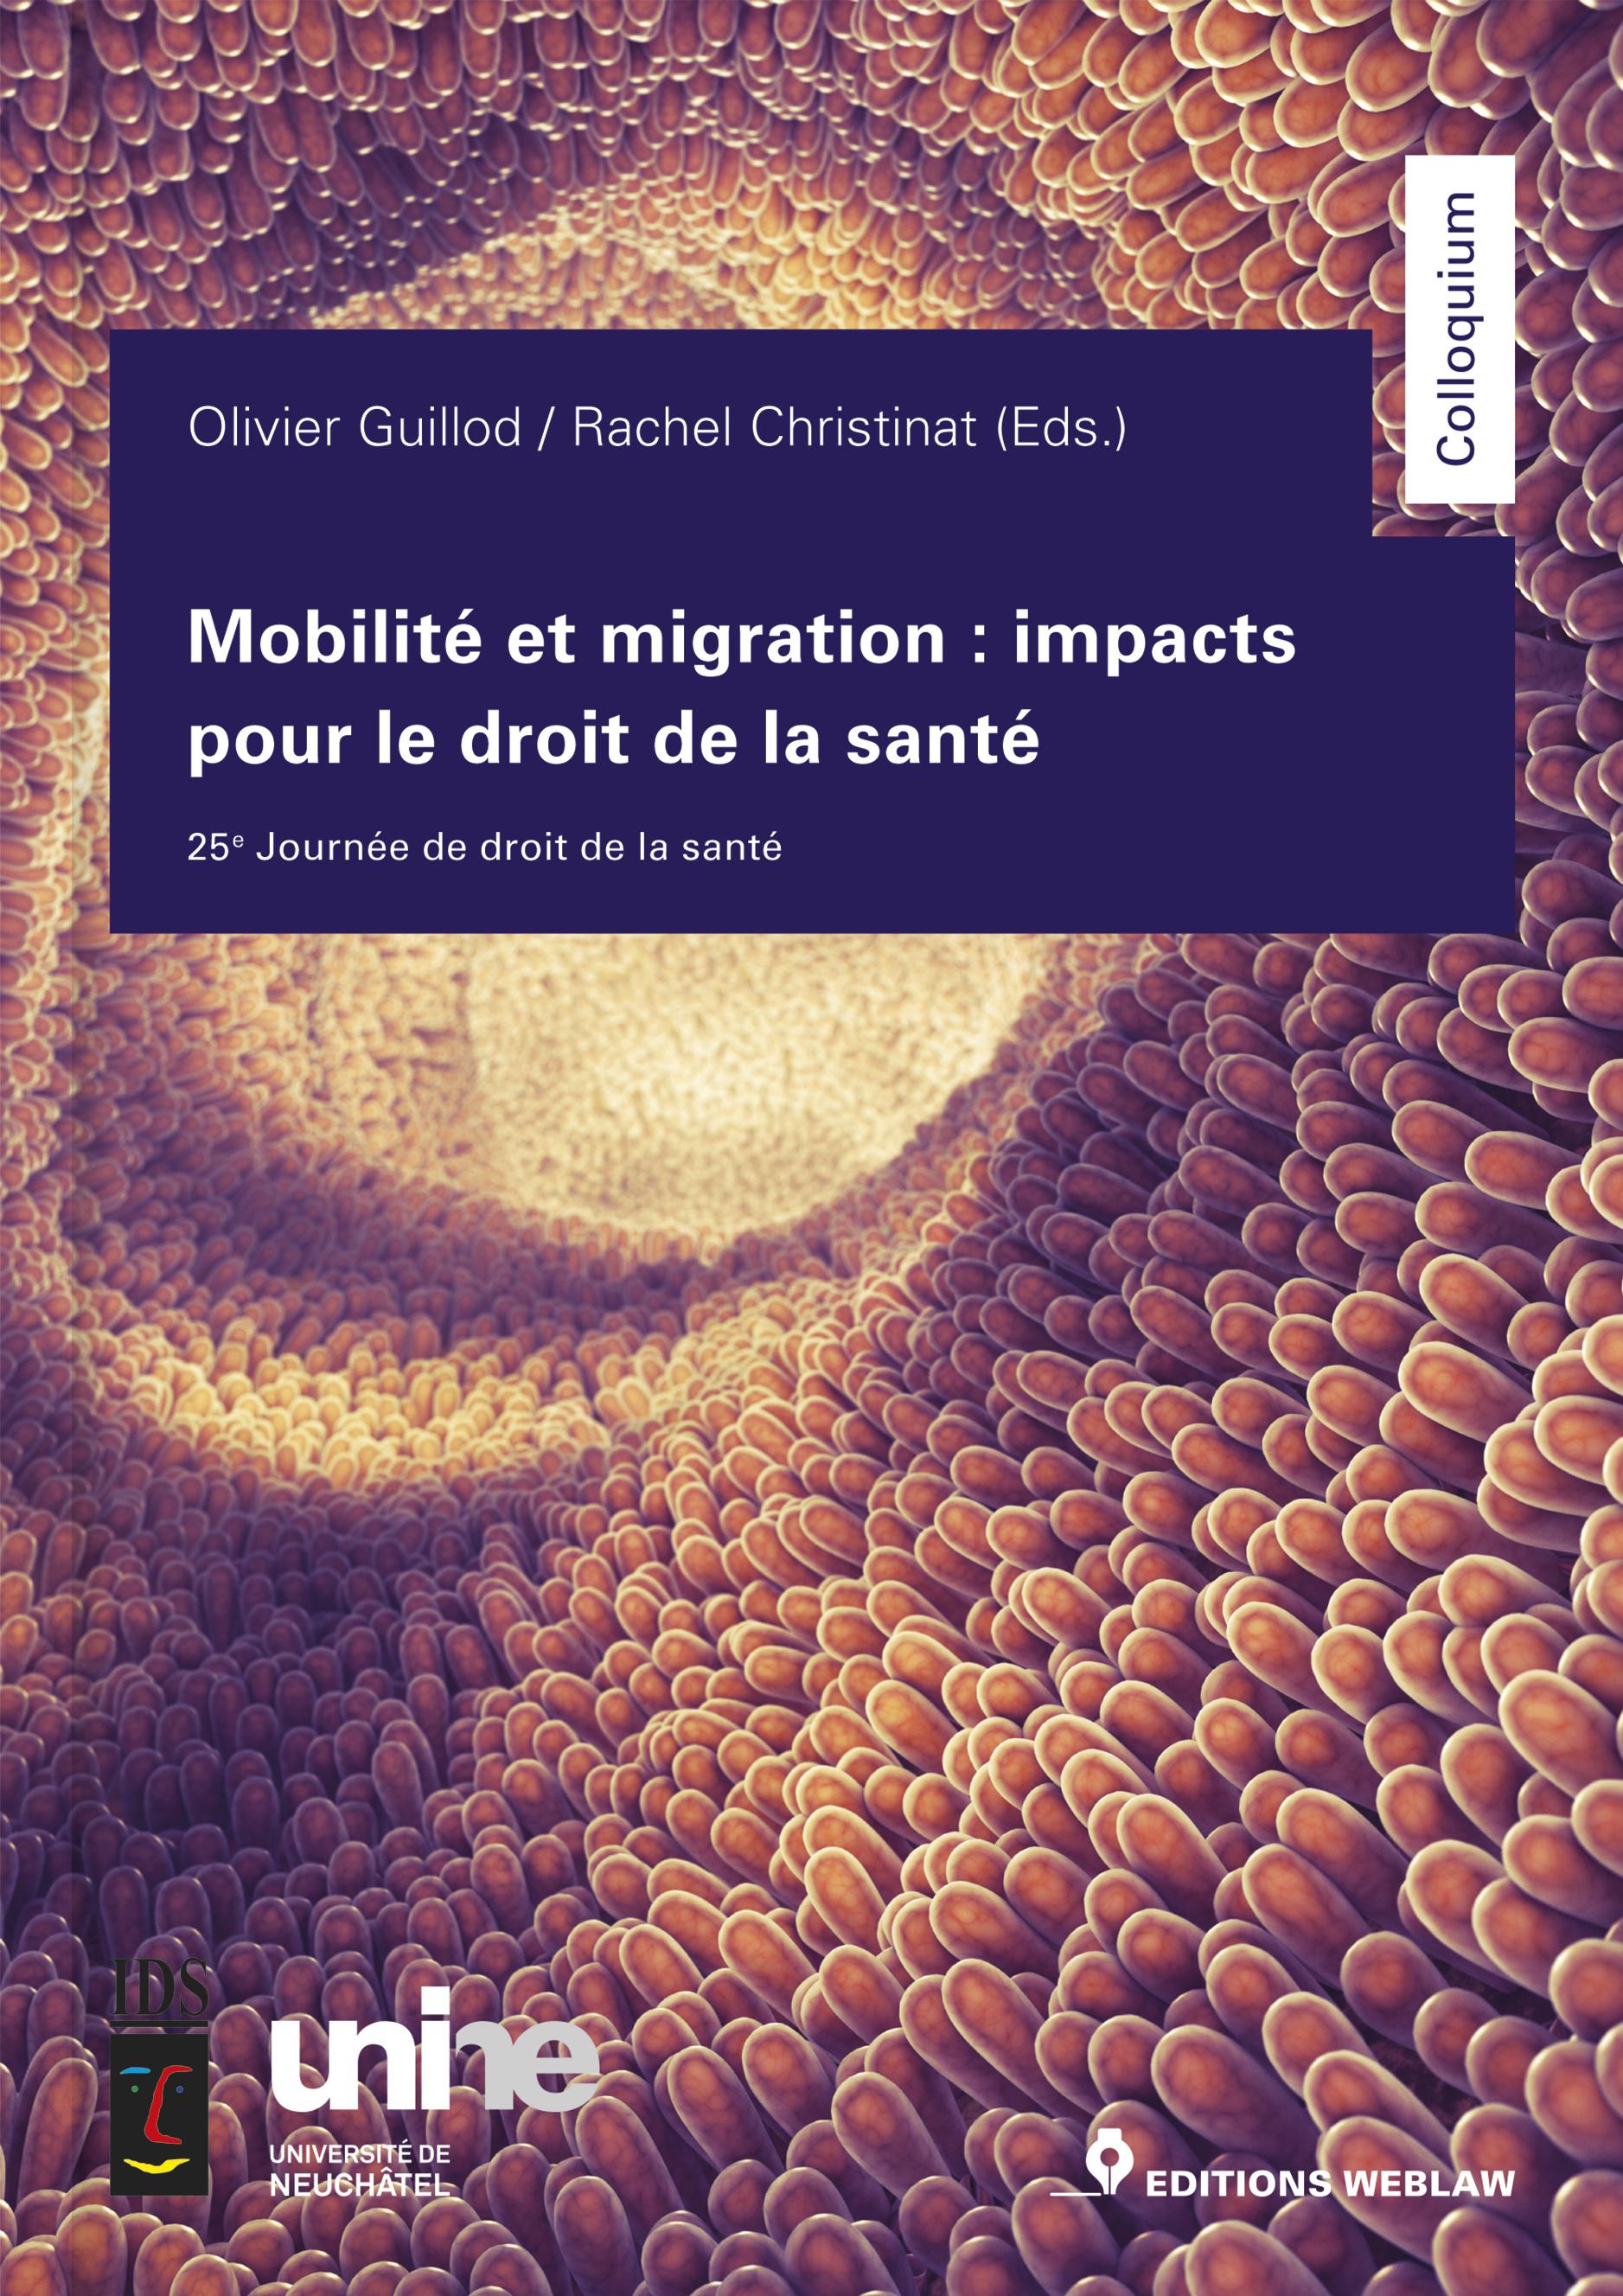 Nouveau aux Editions Weblaw : Olivier Guillod / Rachel Christinat (Eds.), Mobilité et migration : impacts pour le droit de la santé